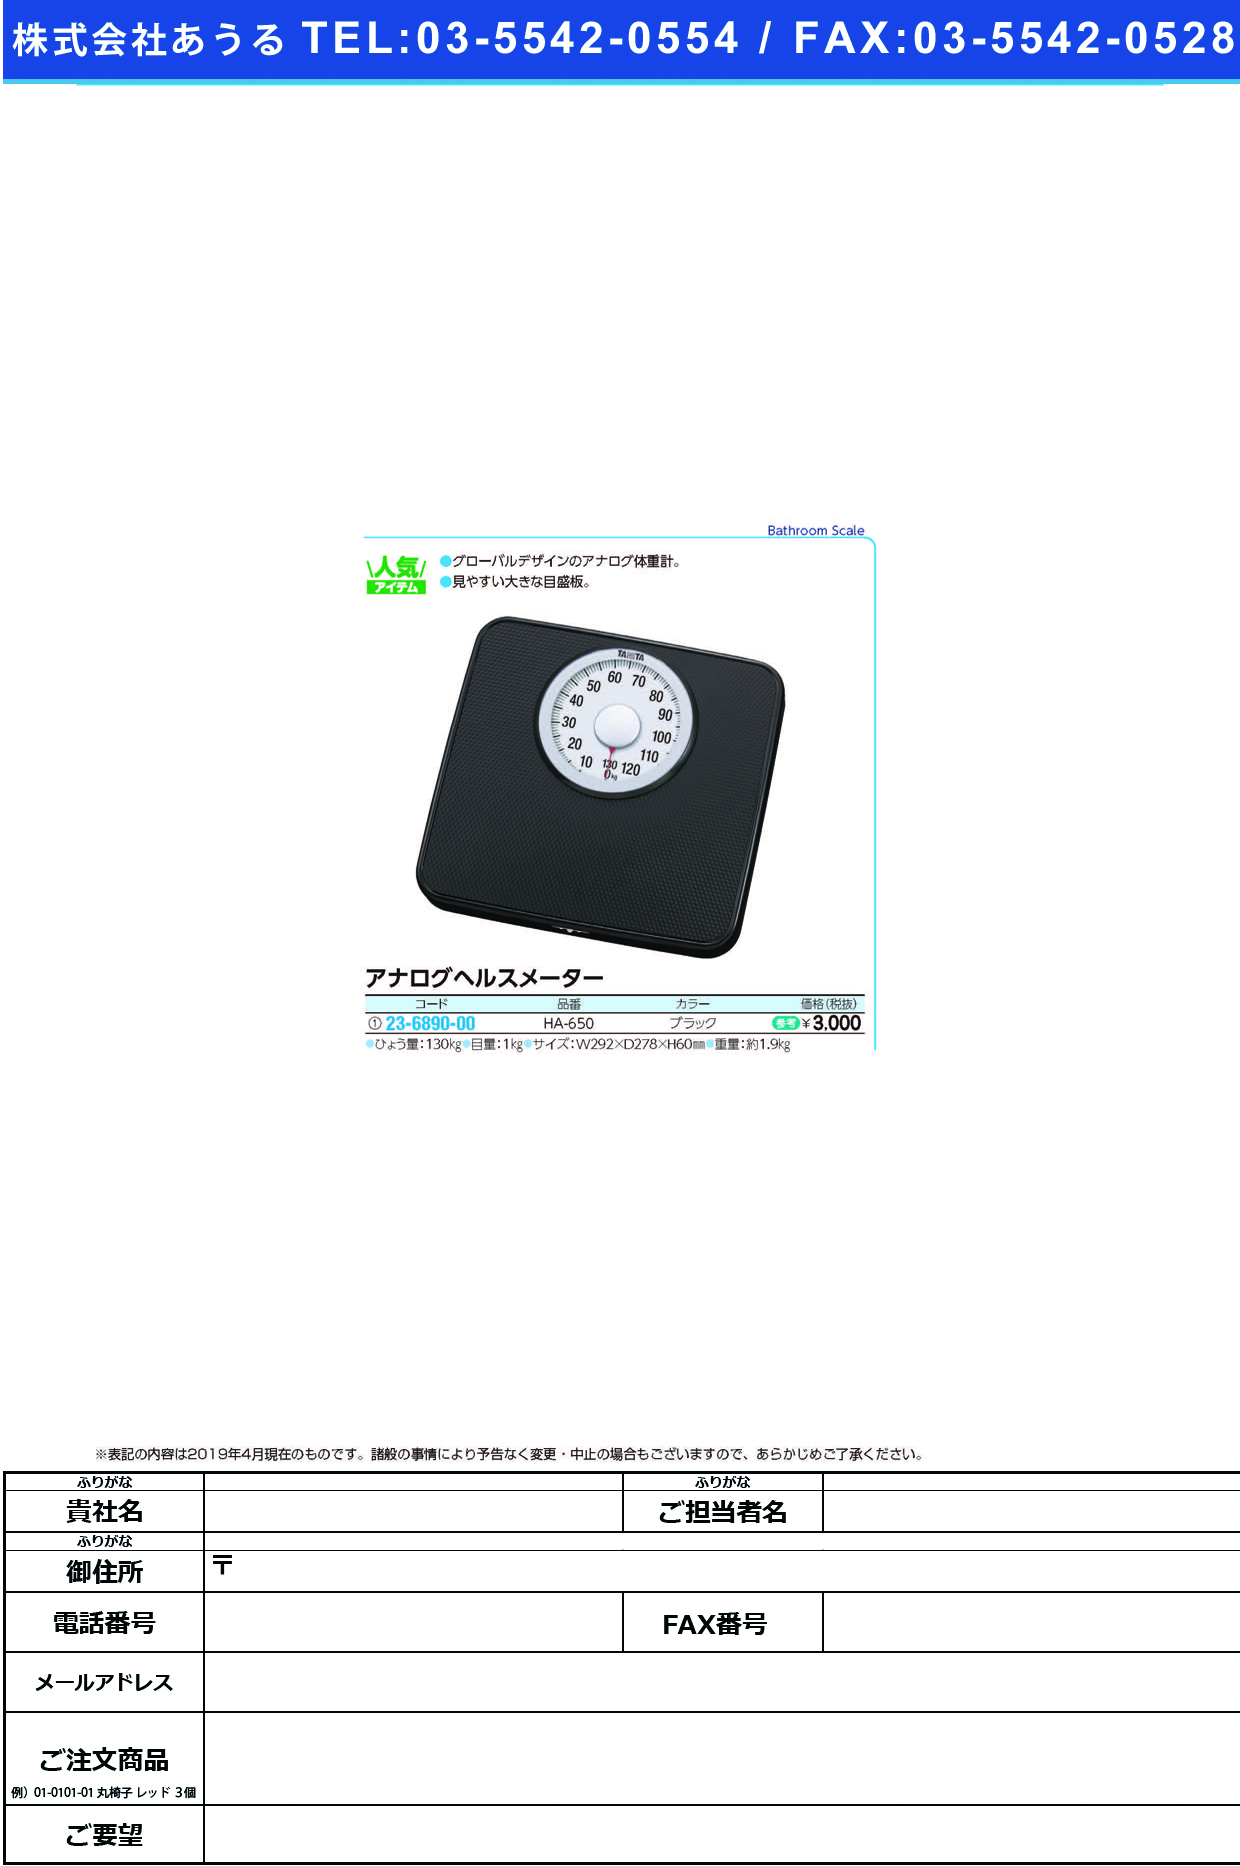 (23-6890-00)アナログヘルスメーター HA-650(ﾌﾞﾗｯｸ) ｱﾅﾛｸﾞﾍﾙｽﾒｰﾀｰ(タニタ)【1台単位】【2019年カタログ商品】